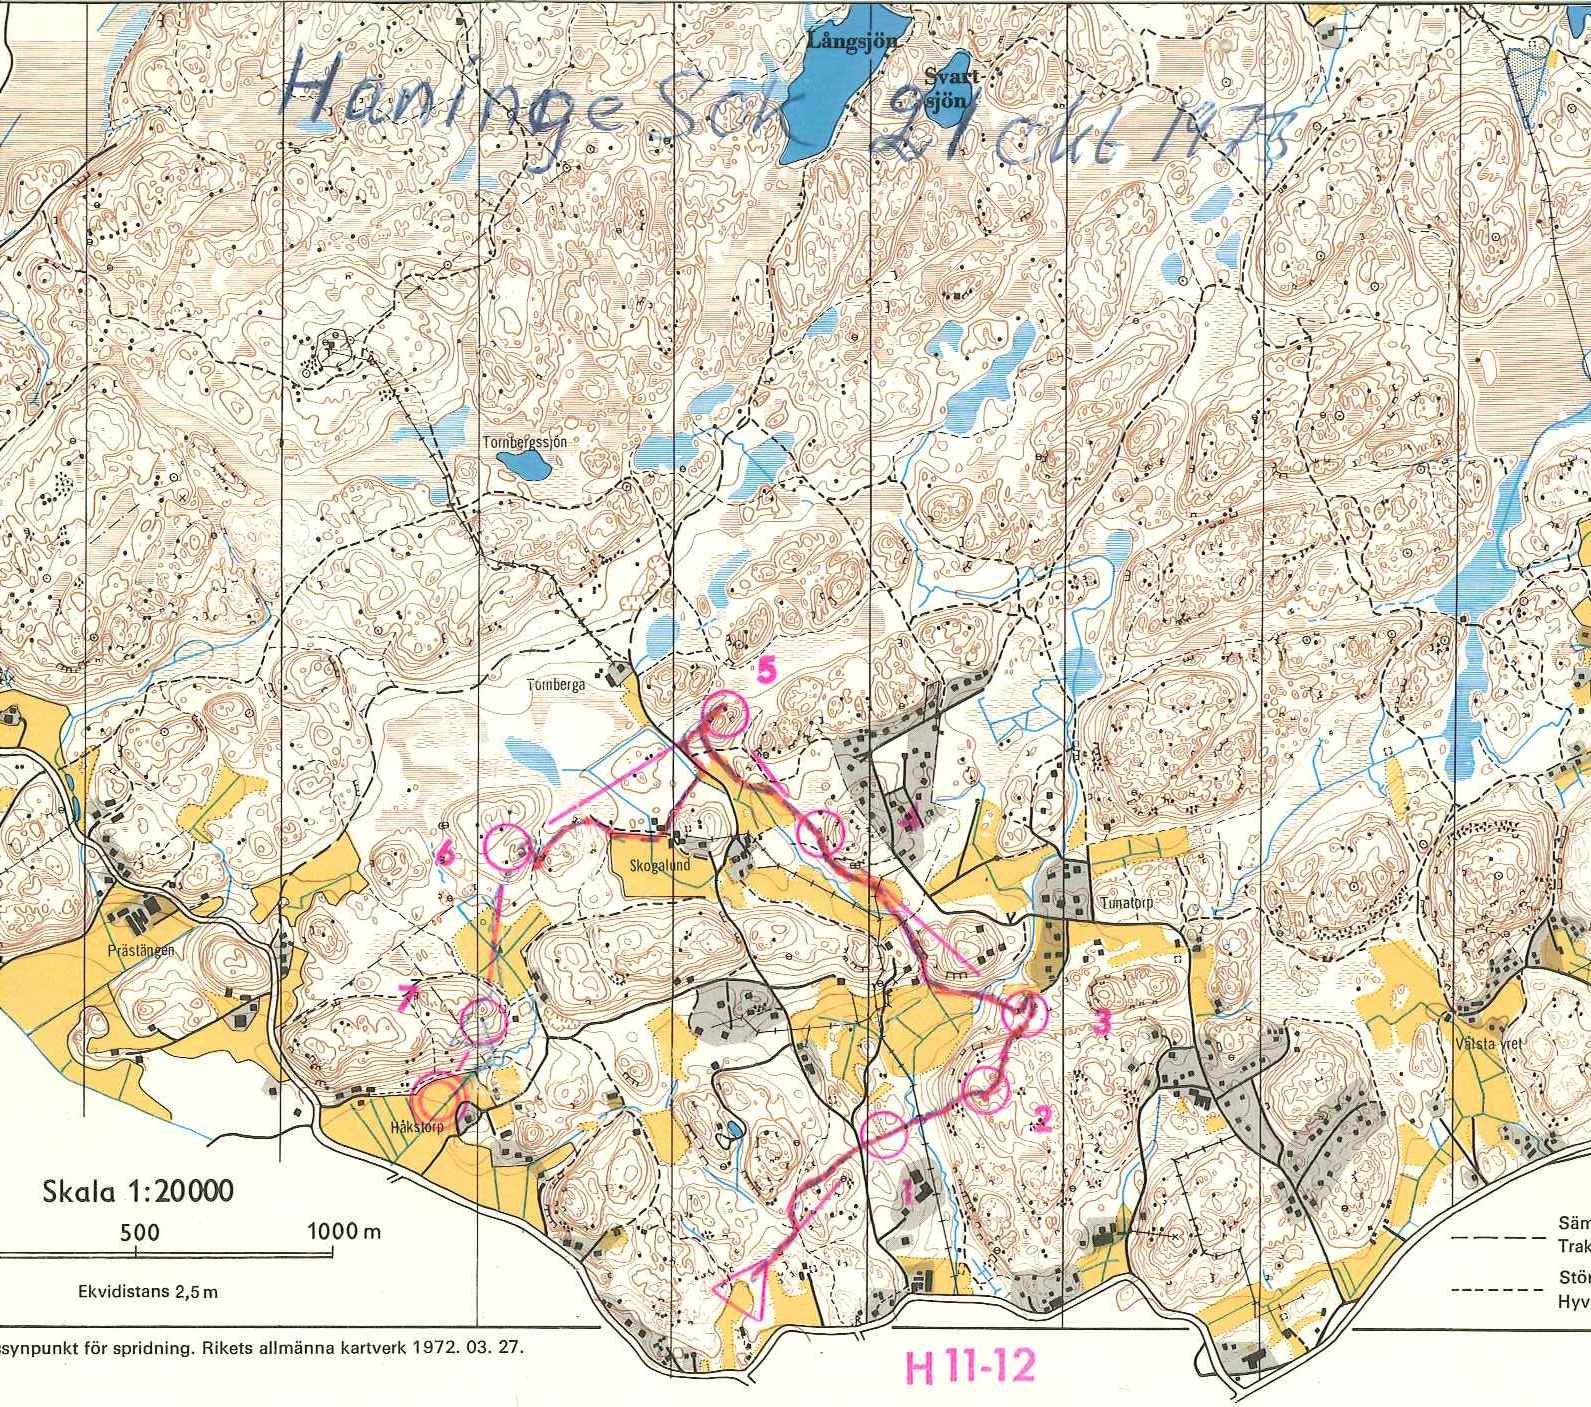 Haninge (21/10/1973)